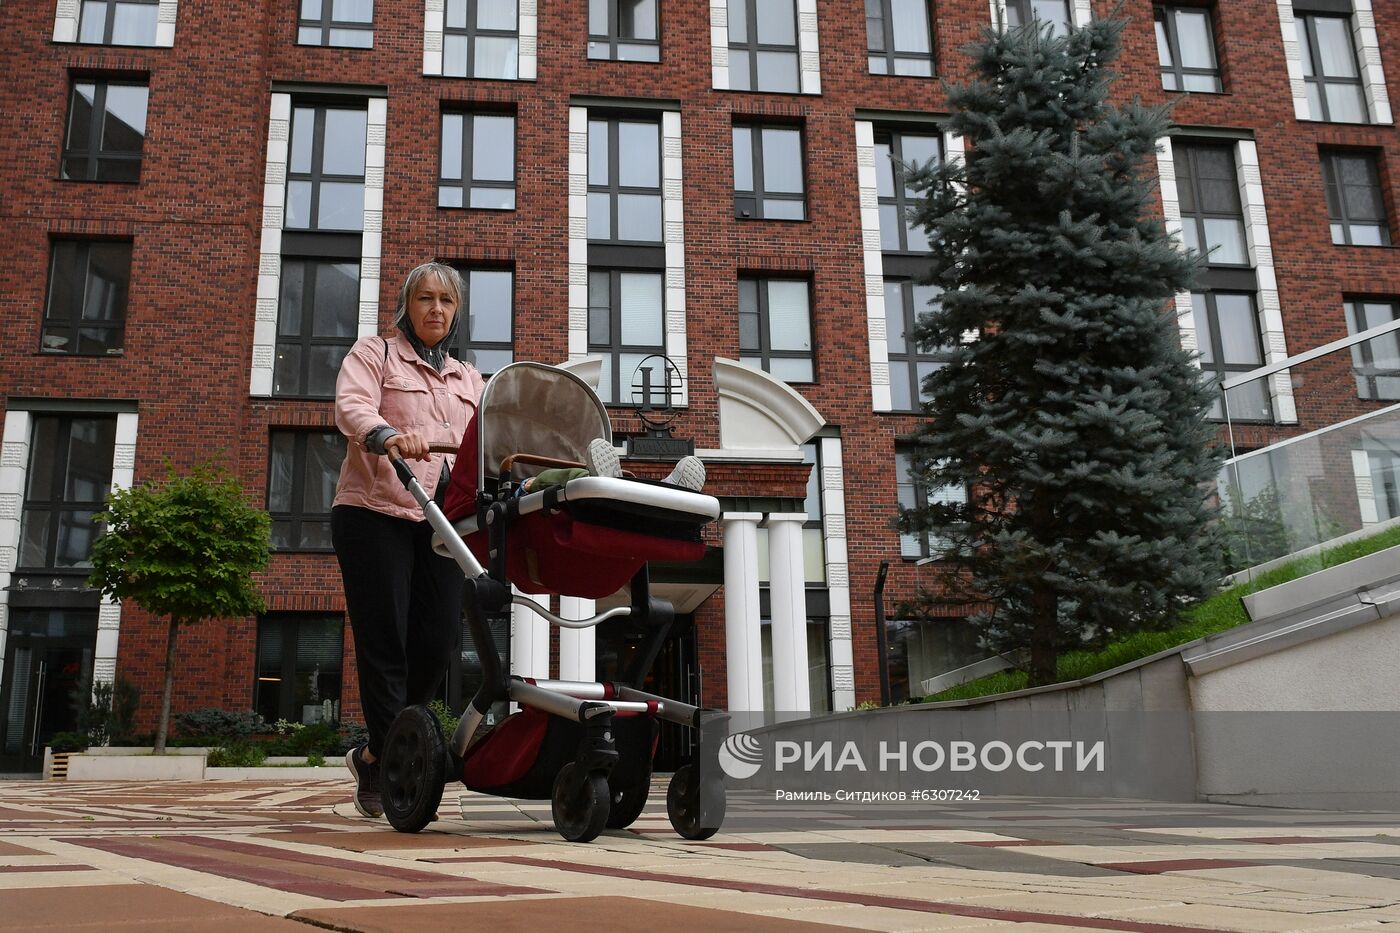 Мэр Москвы С. Собянин осмотрел ход реализации проекта реновации промзоны Братцево